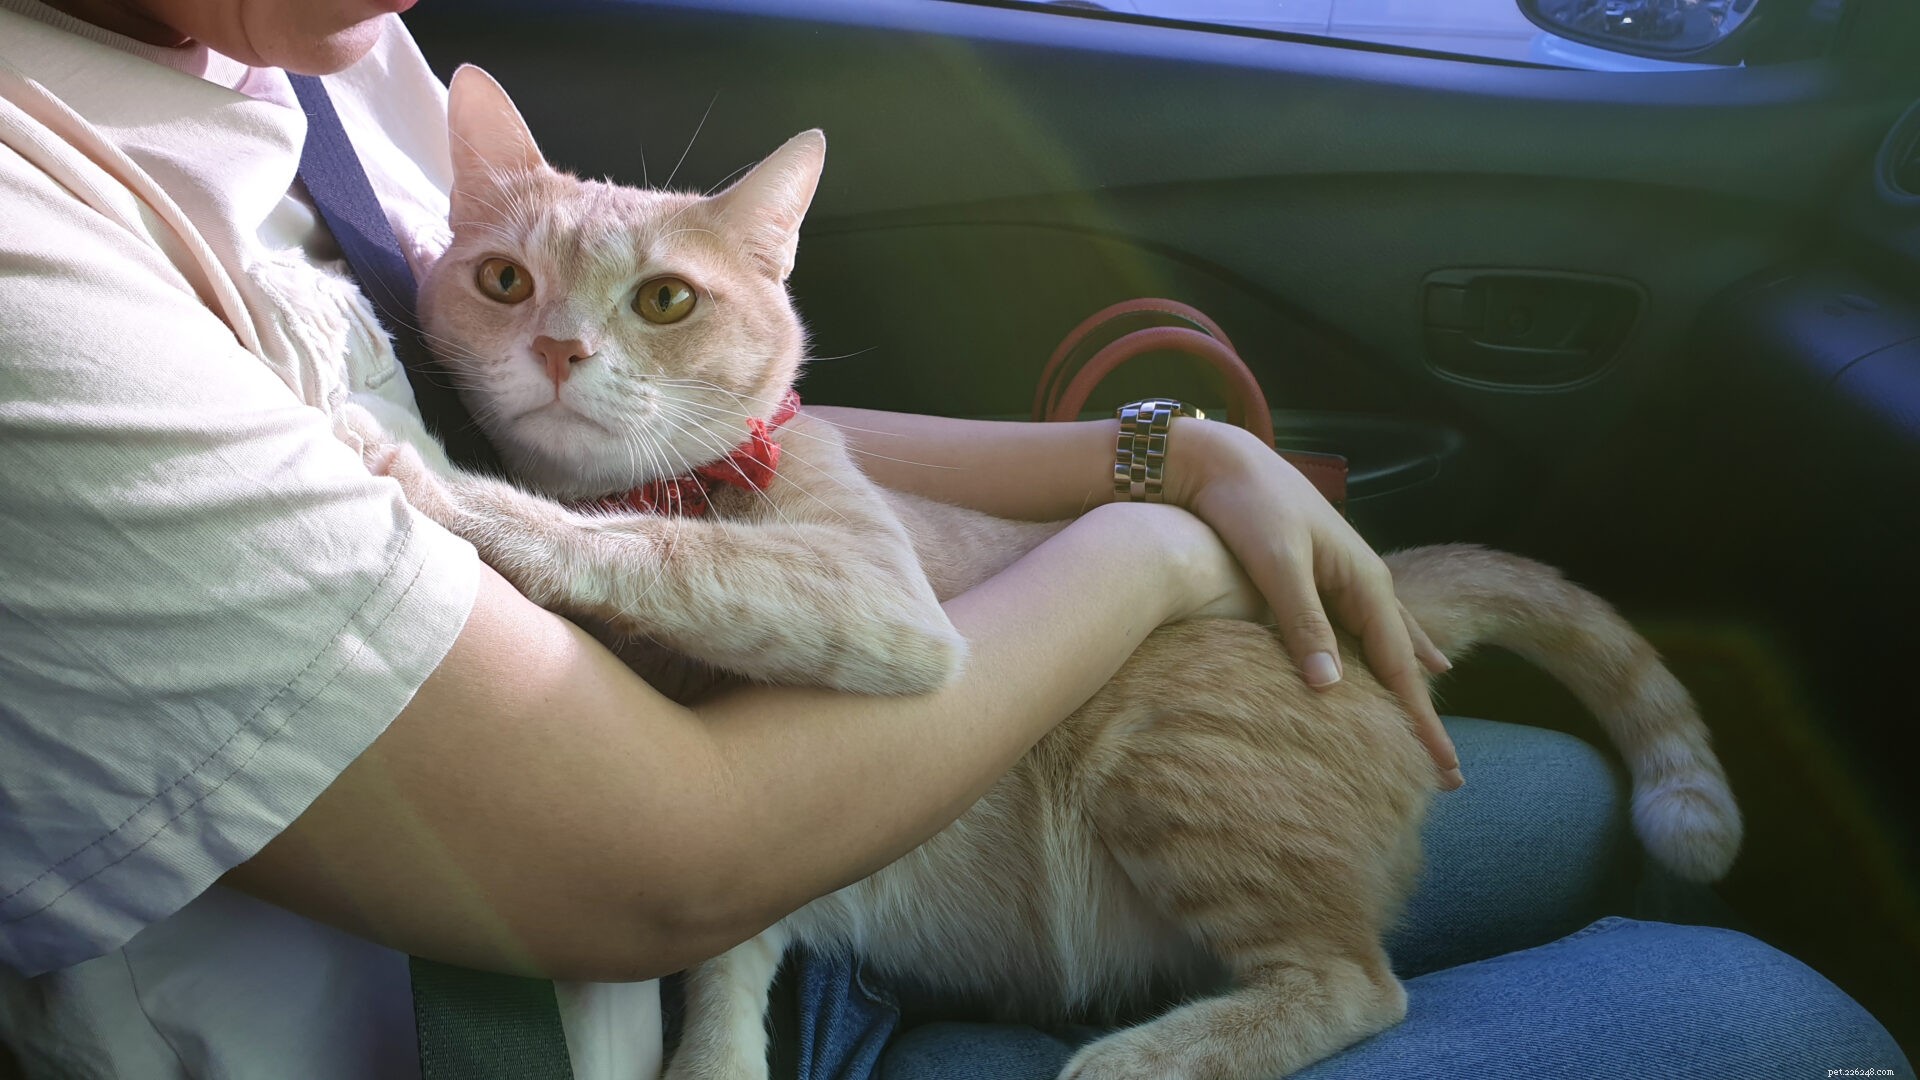 Почему кошки ненавидят автомобильные поездки?